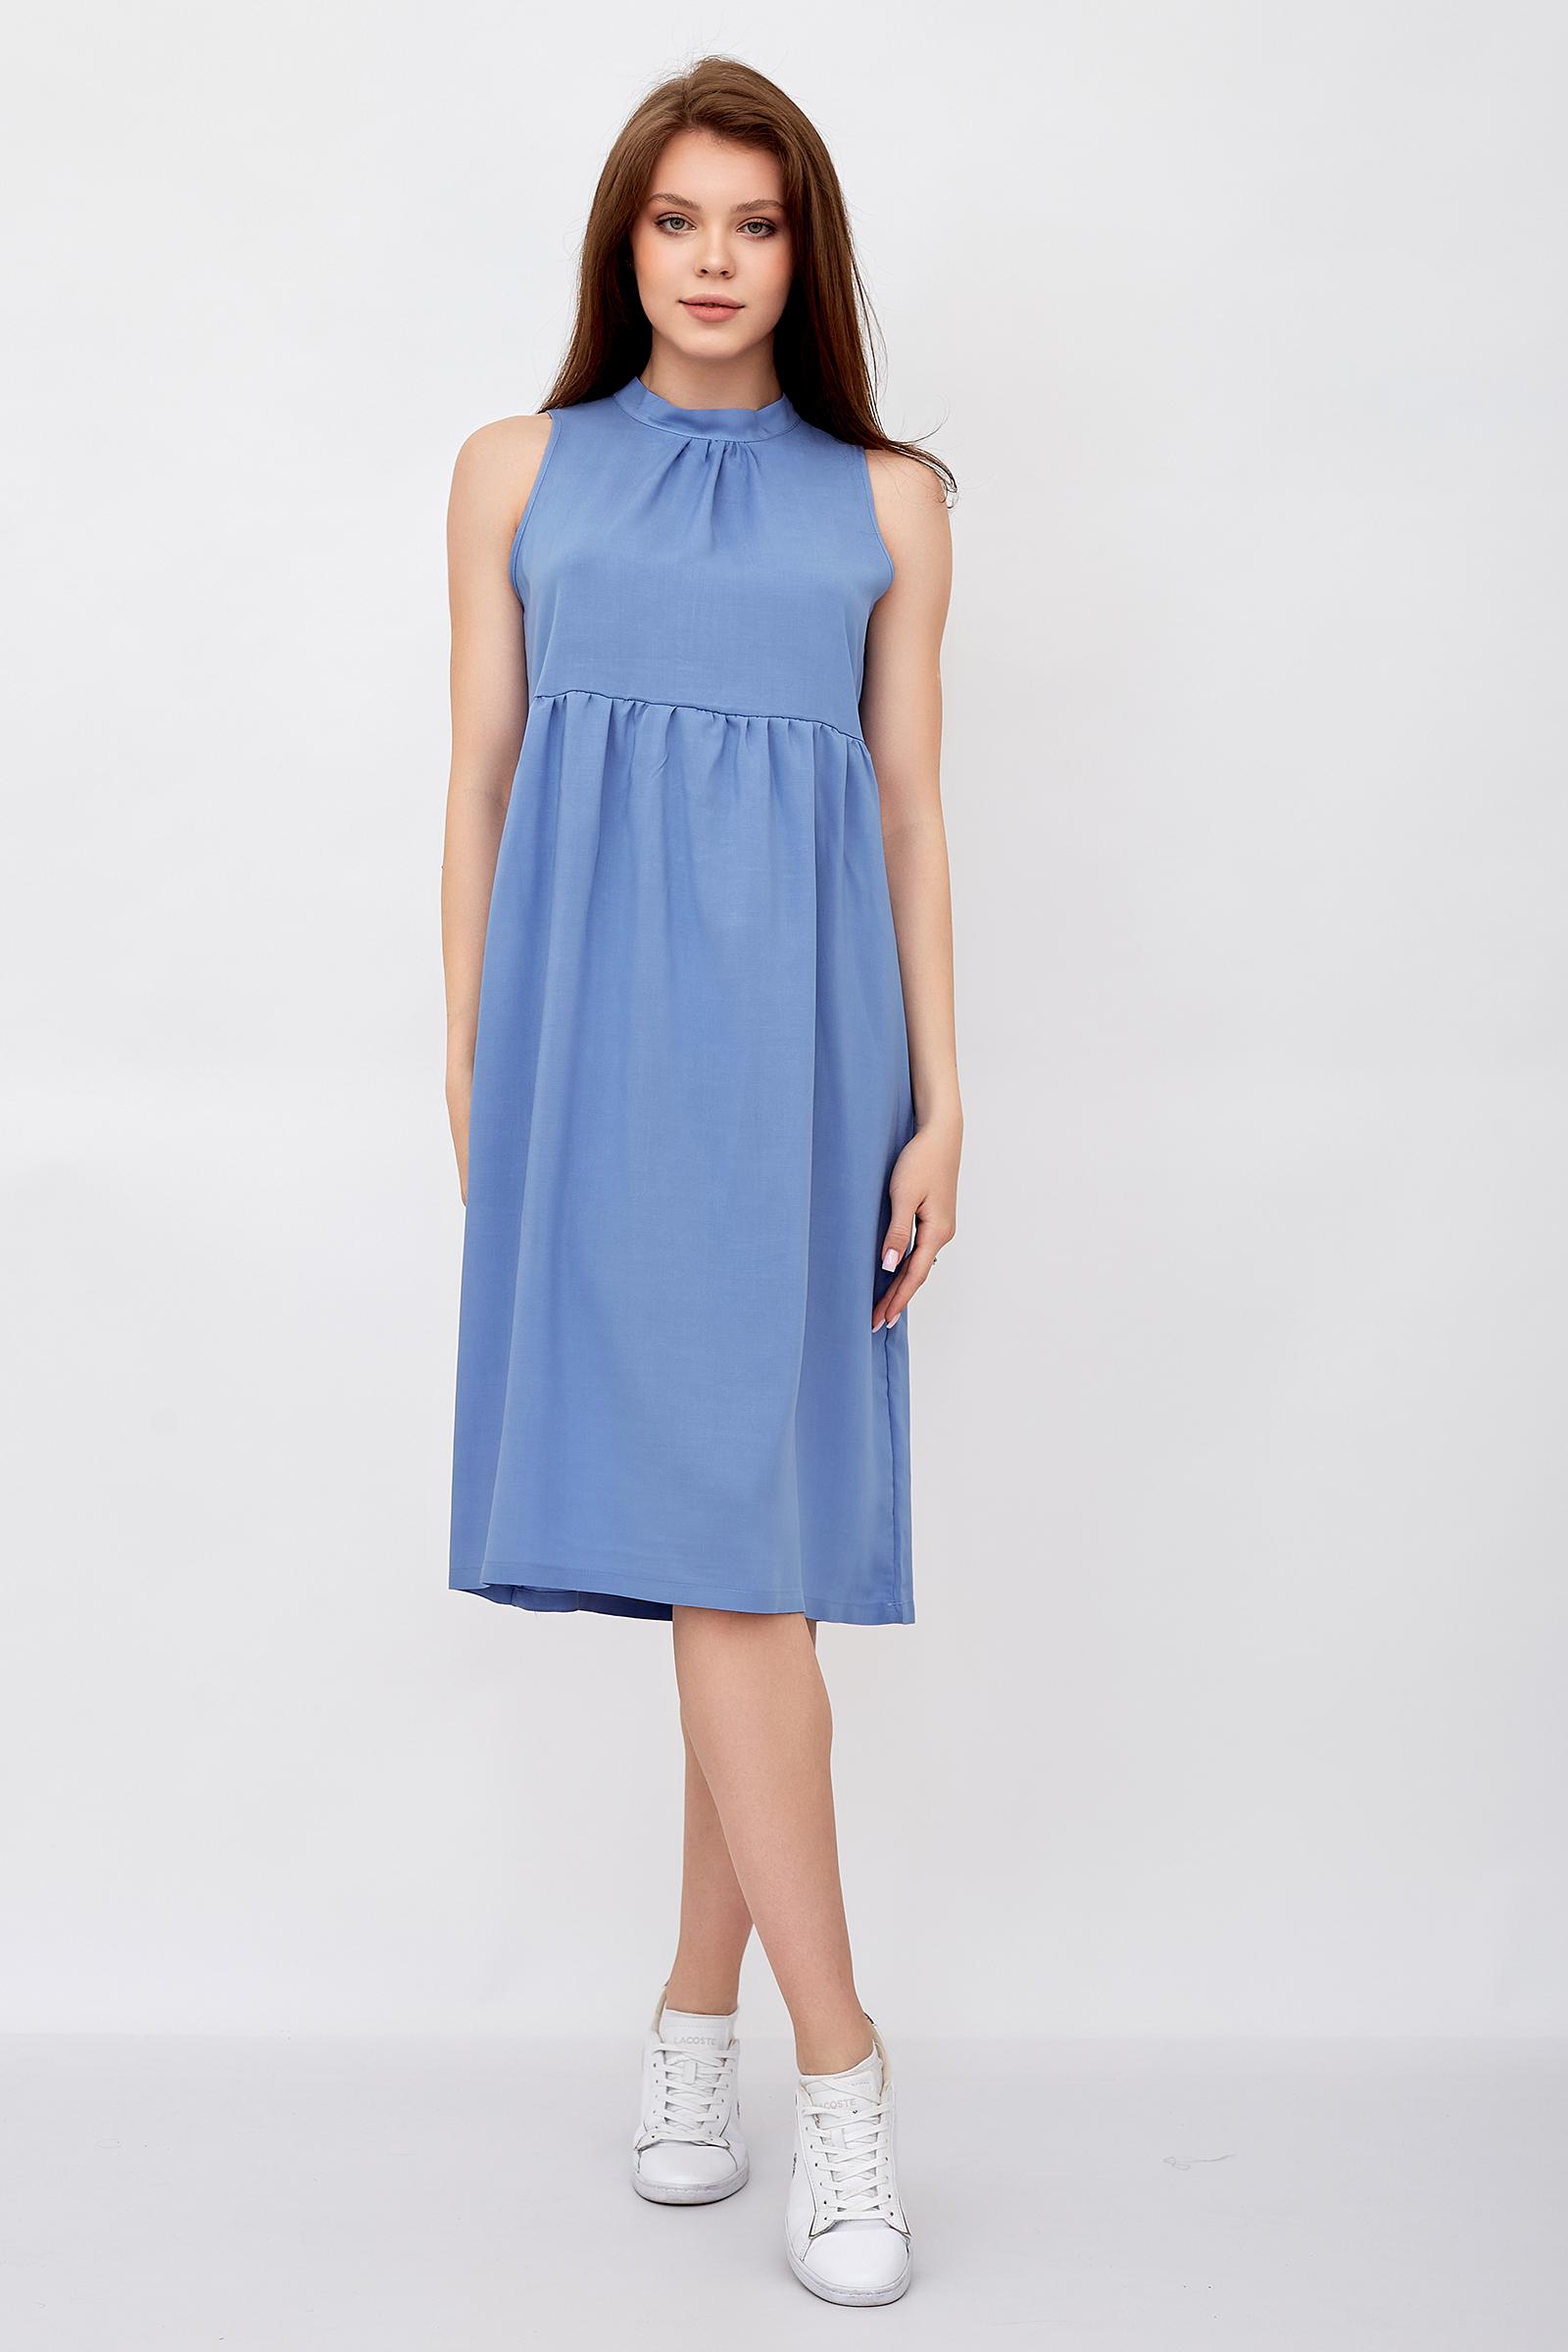 Платье женское LikaDress 18-1644 голубое 52 RU